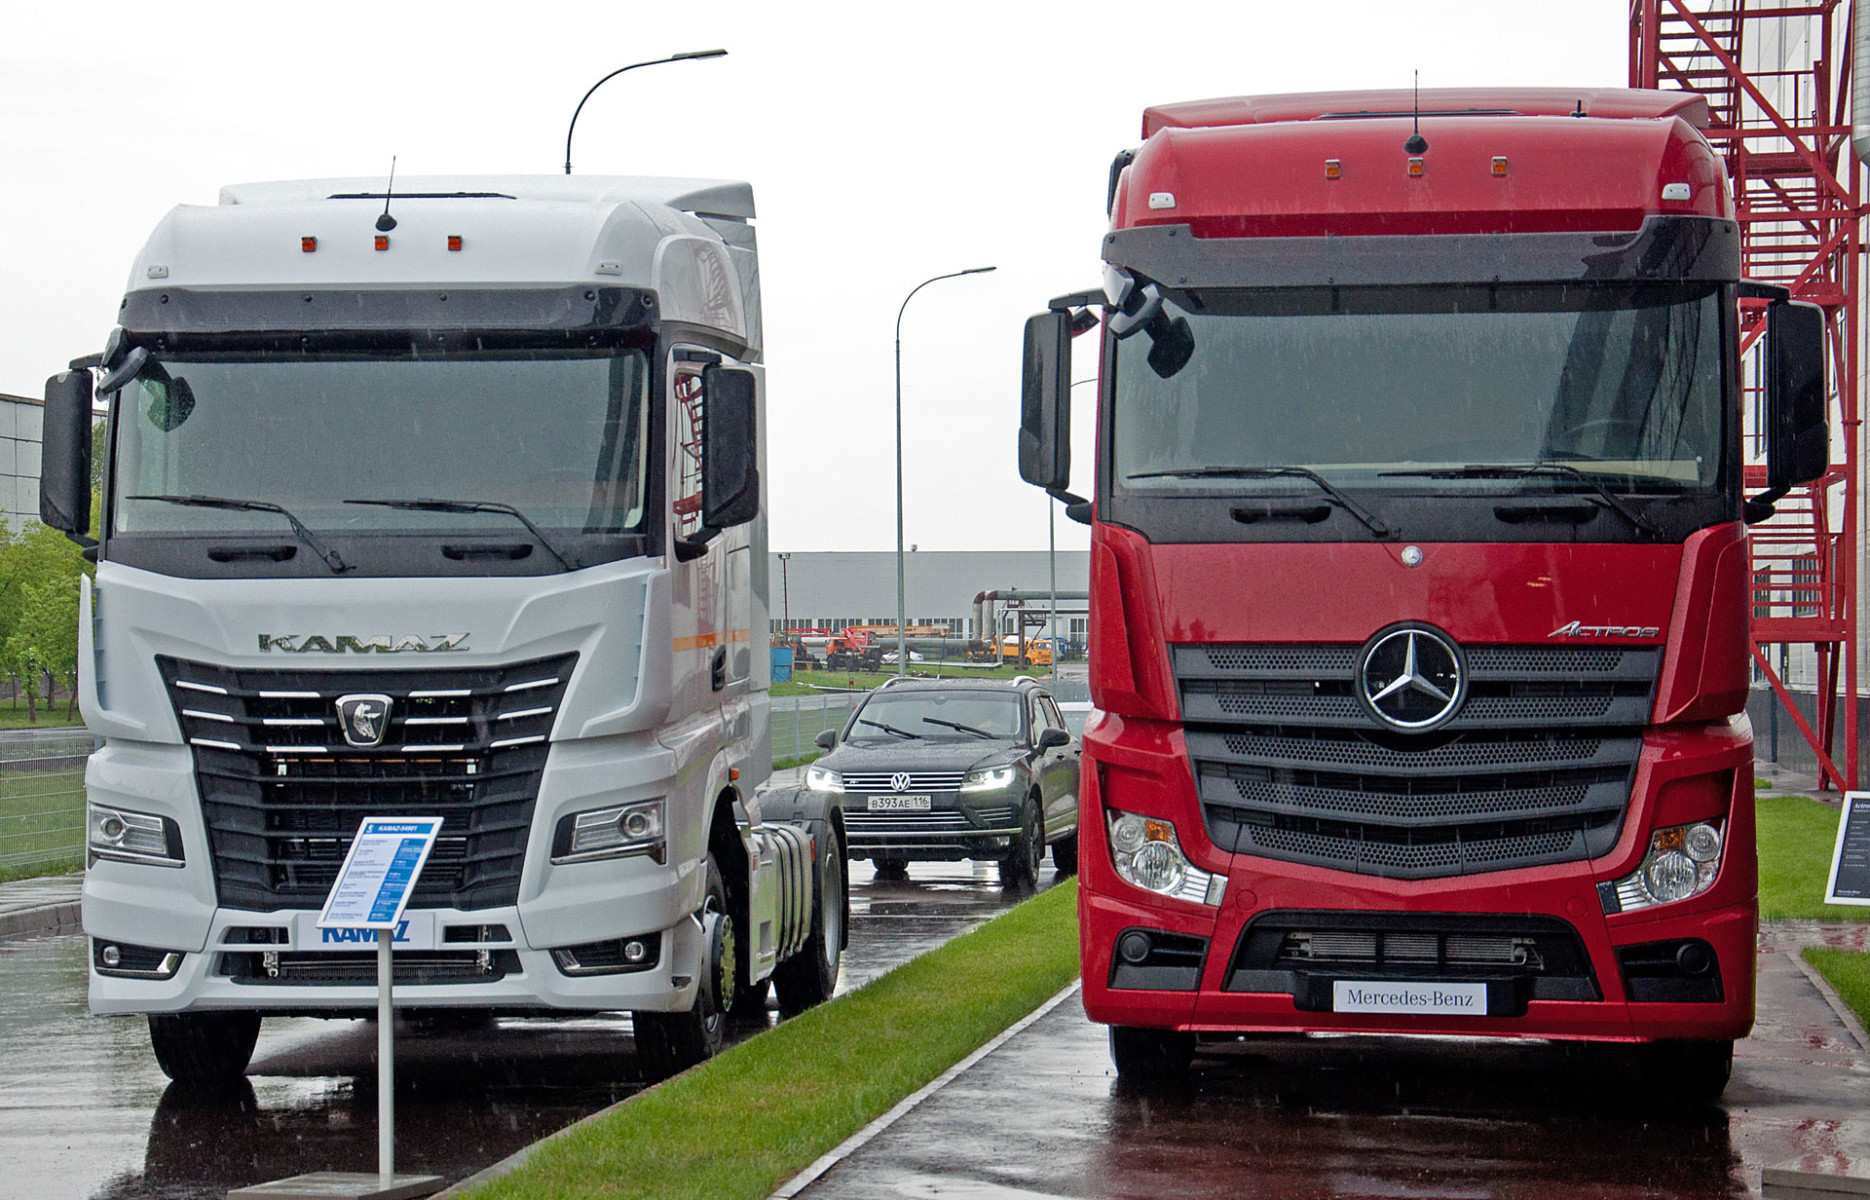 И немцу хорошо, и русскому неплохо: запущен завод каркасов кабин для грузовиков КамАЗ и Mercedes-Benz daimler,КамАЗ,марки и модели